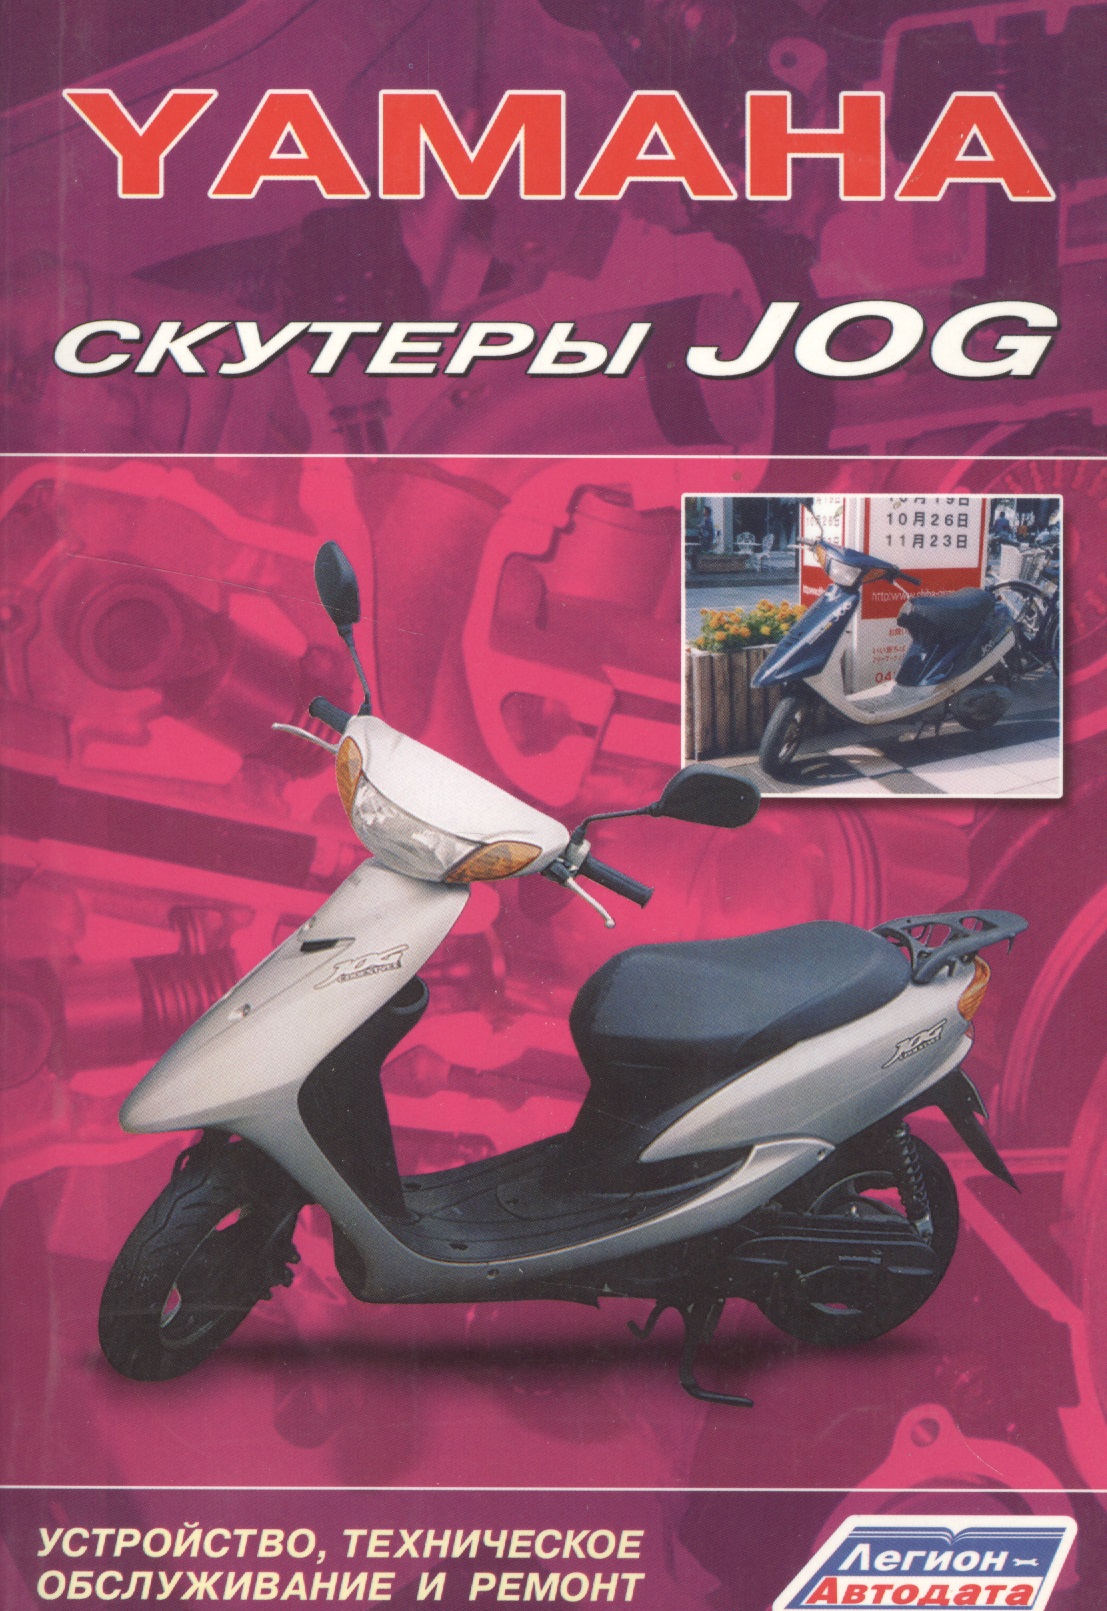 Скутеры YAMAHA JOG. Устройство, техническое обслуживание и ремонт honda скутеры tact dio устройство техническое обслуживание и ремонт